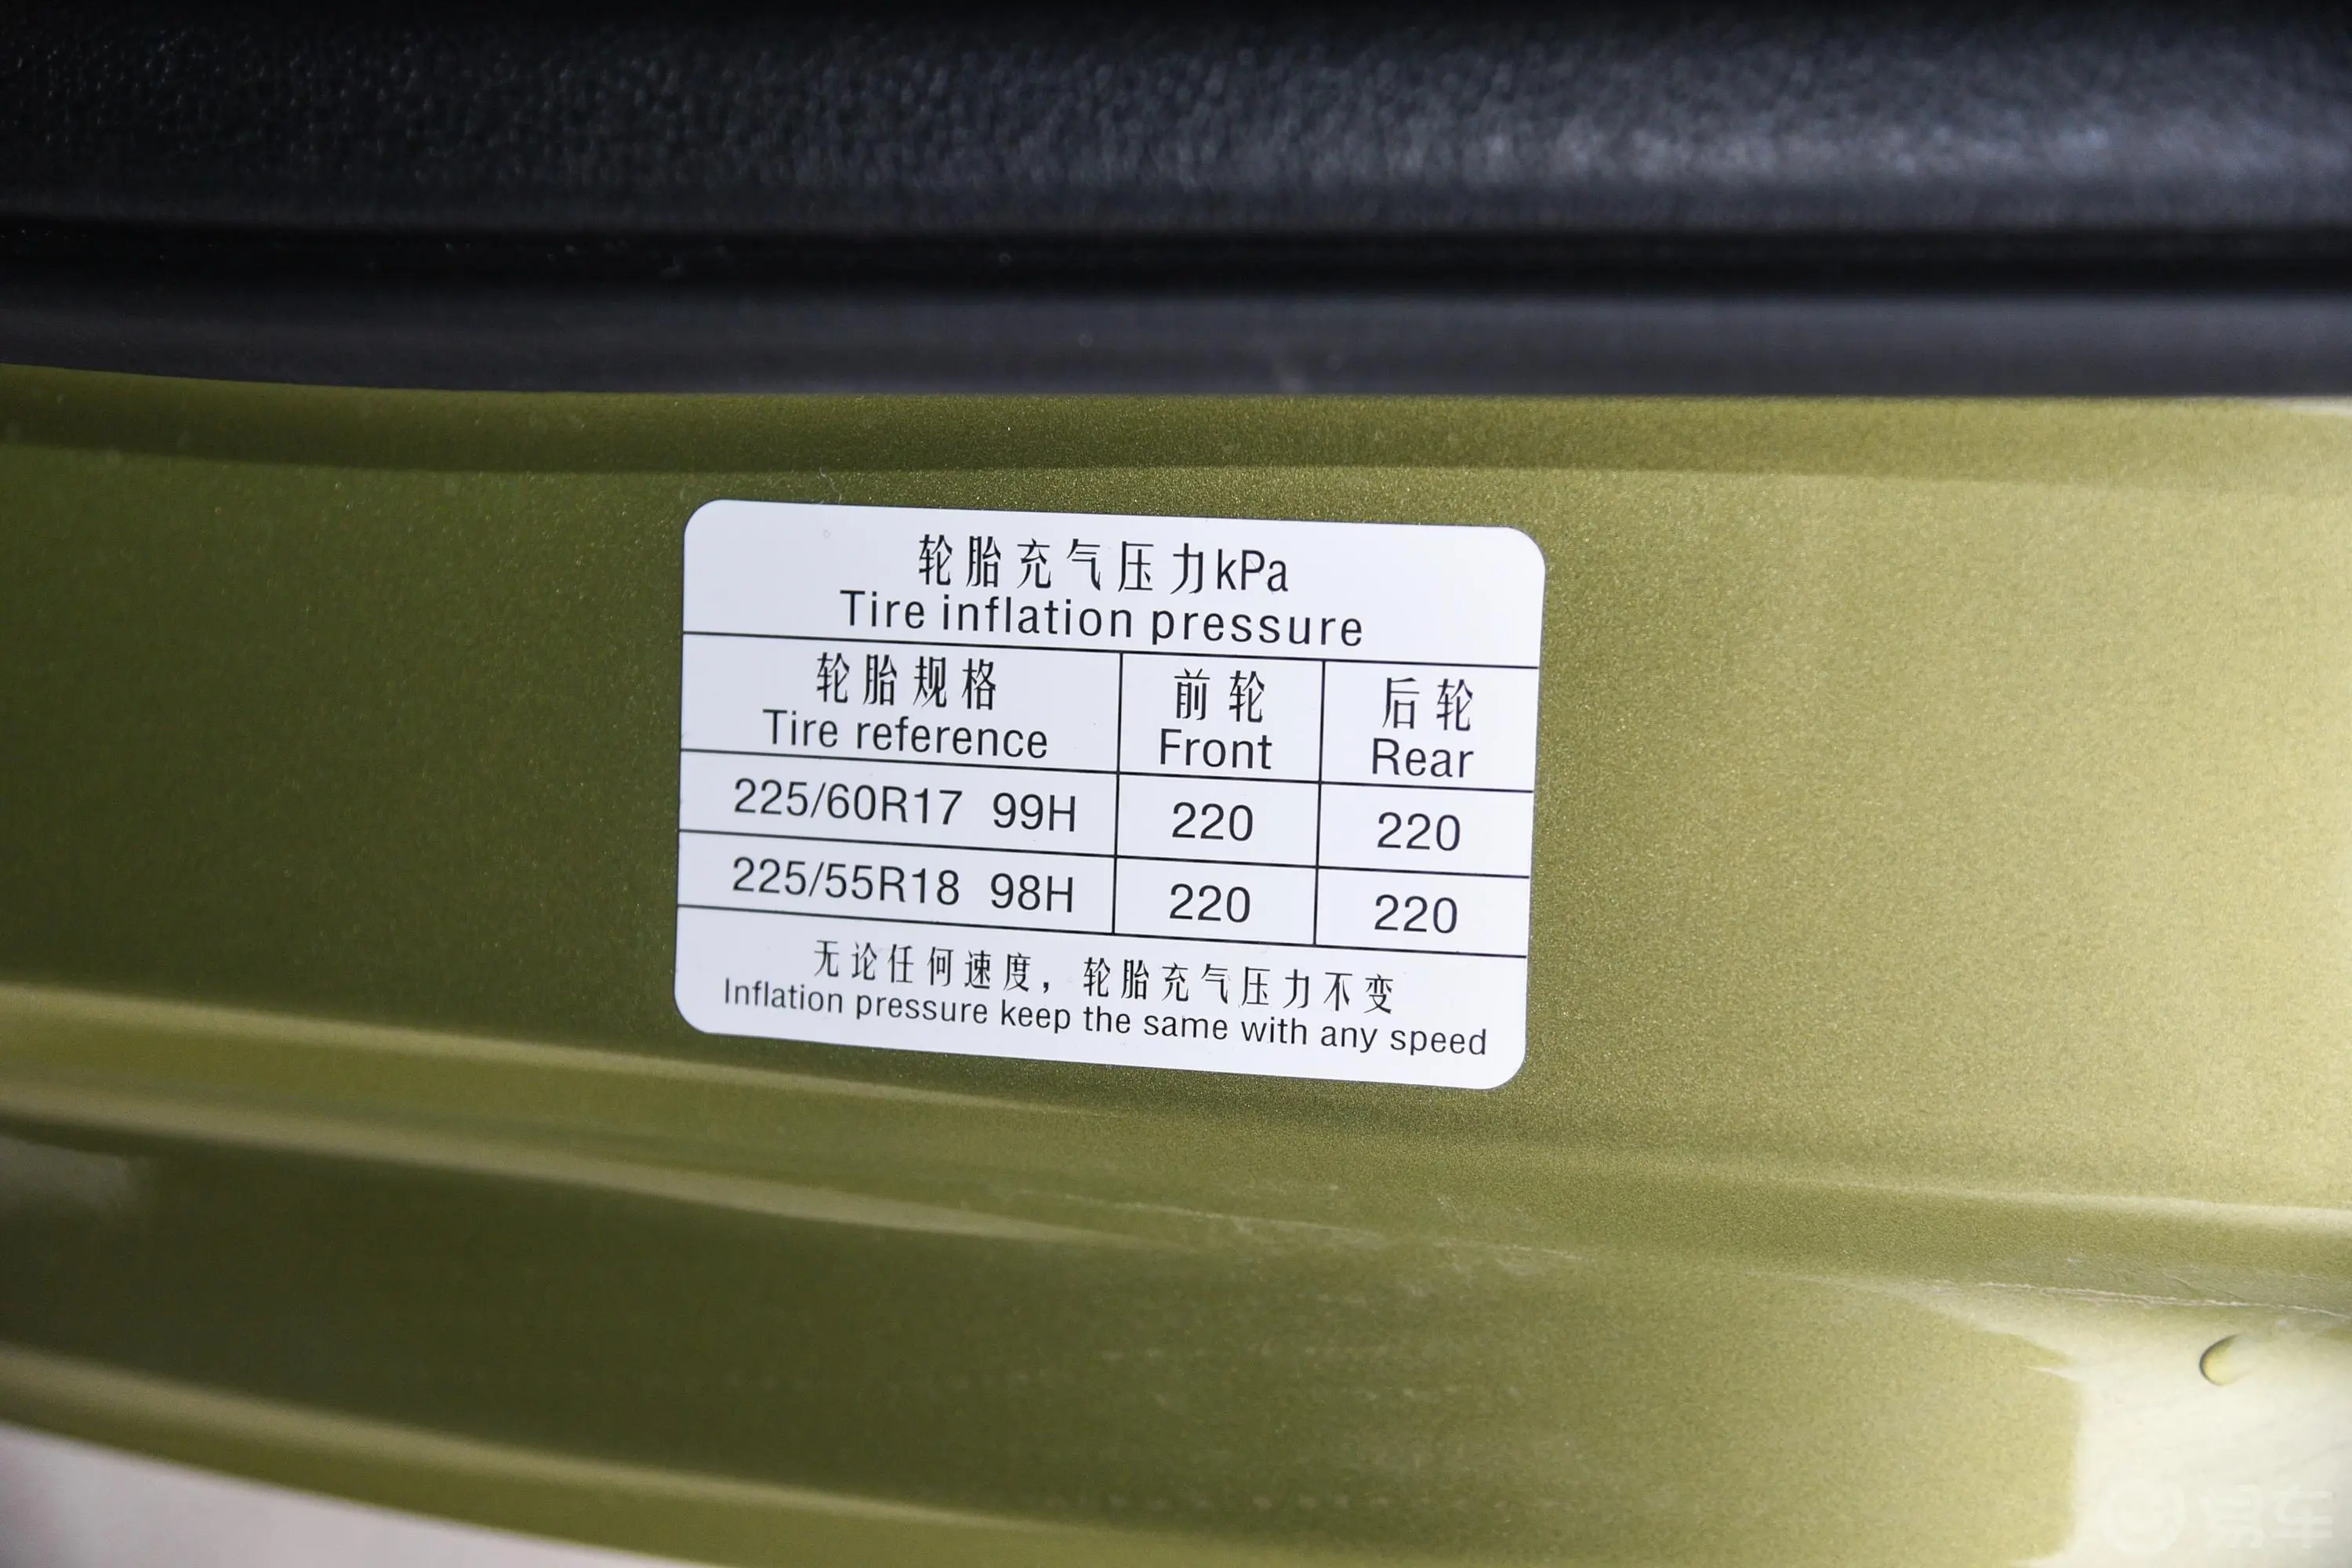 北京BJ201.5T CVT 豪华版胎压信息铭牌